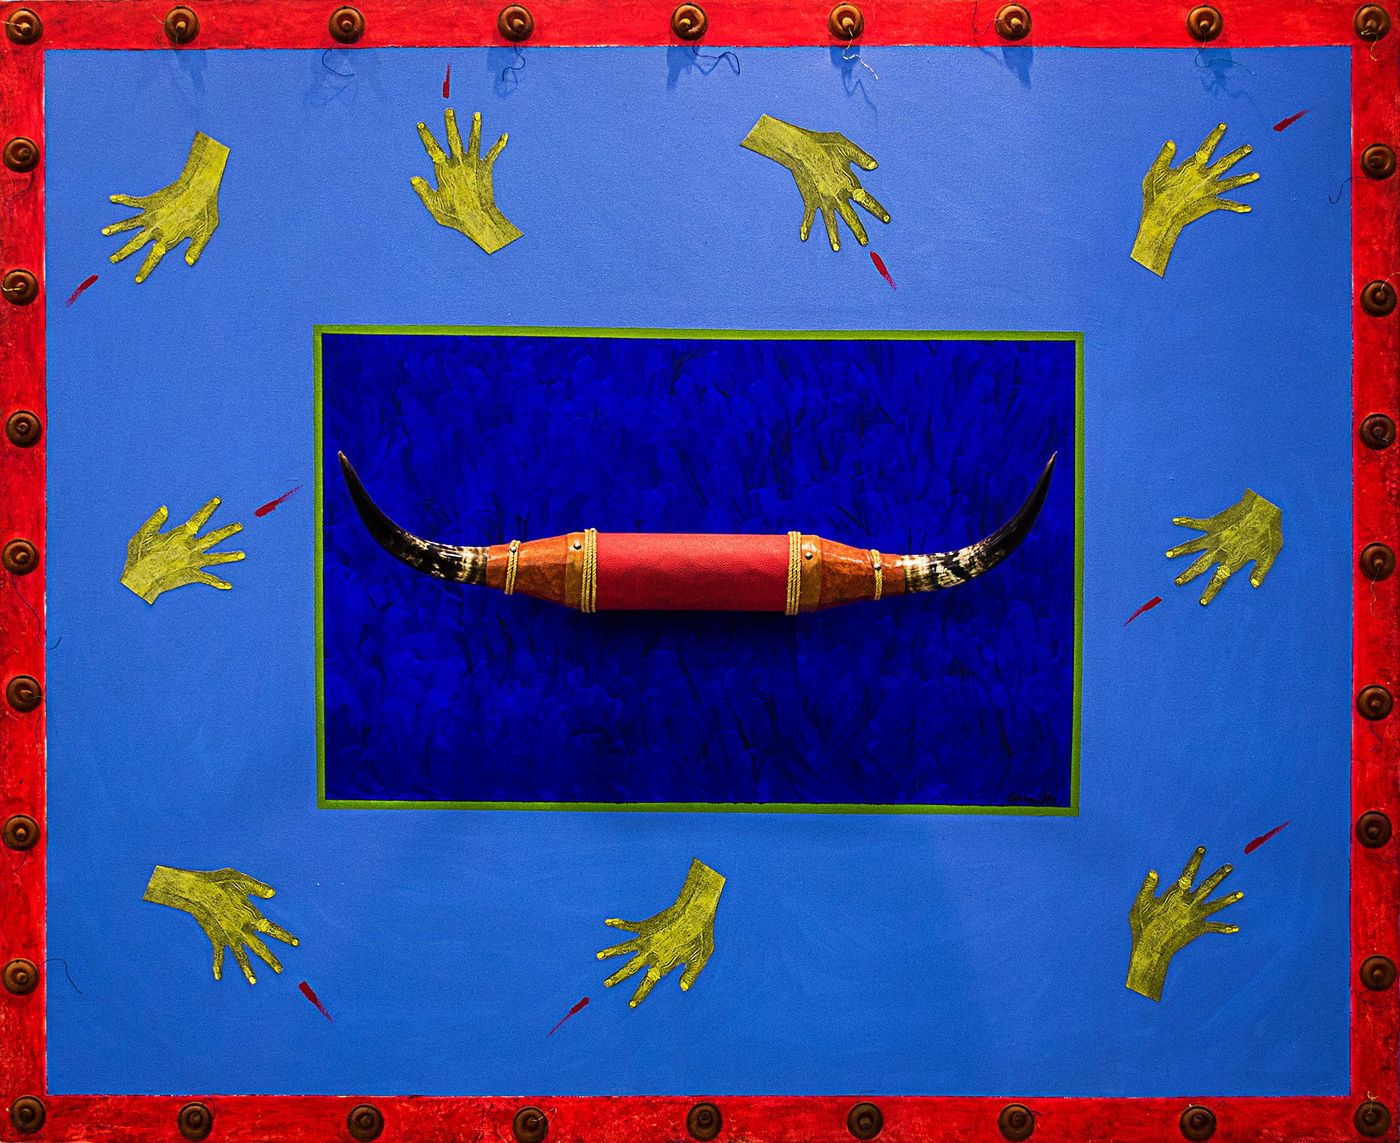 Ofelia Rodríguez, Paisaje flotando con cuernos, 1993. Técnica mixta sobre lienzo, 170 x 210 cm. Cortesía: Instituto de Visión, Bogotá